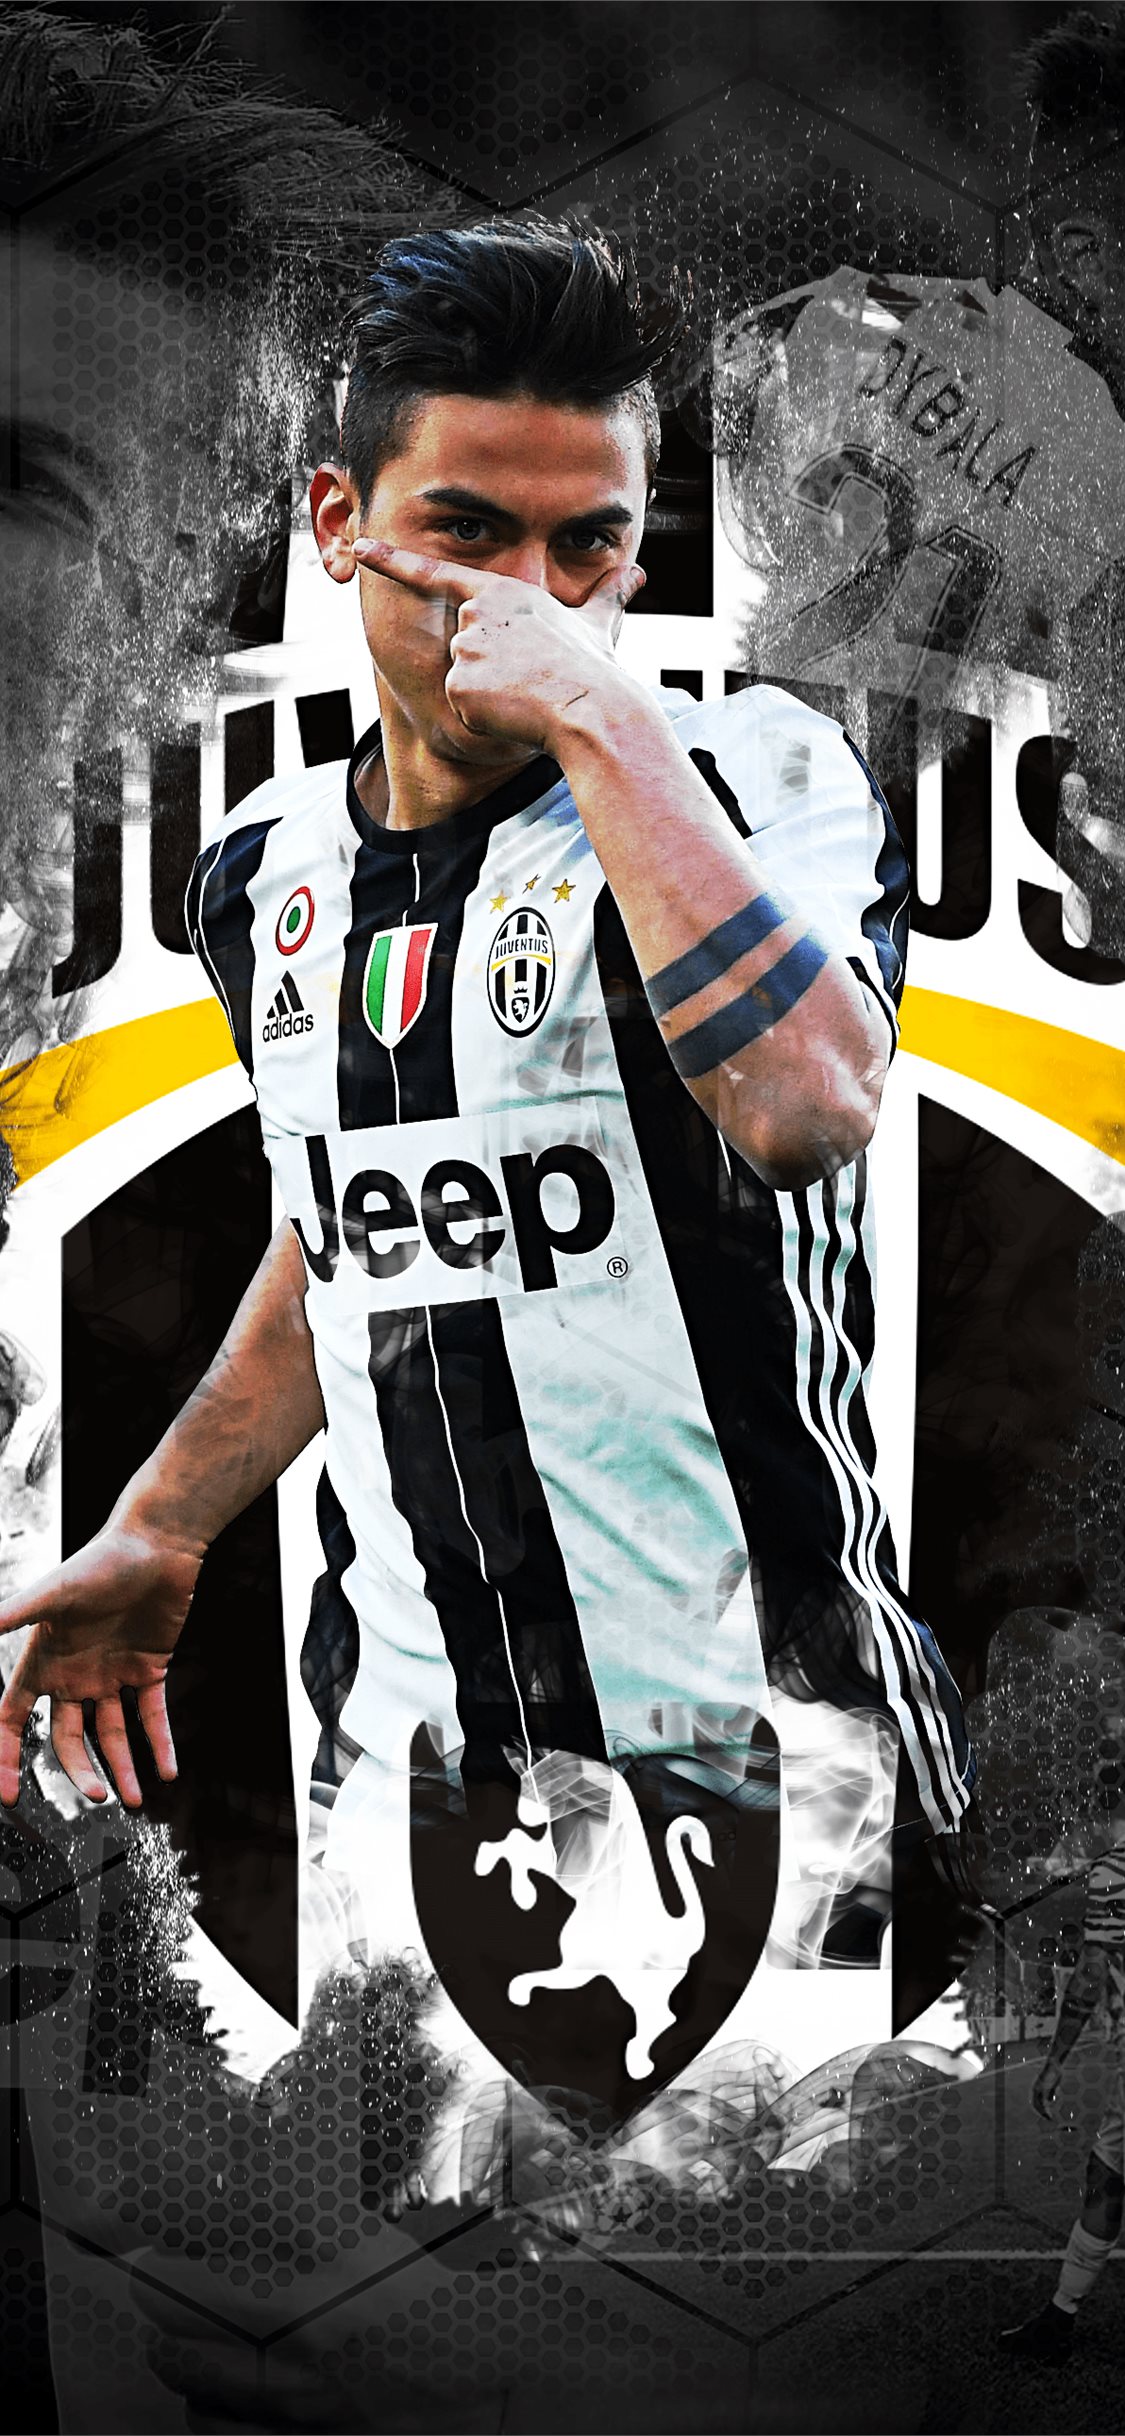 Cristiano Ronaldo Juventus Wallpapers - WallpaperSafari